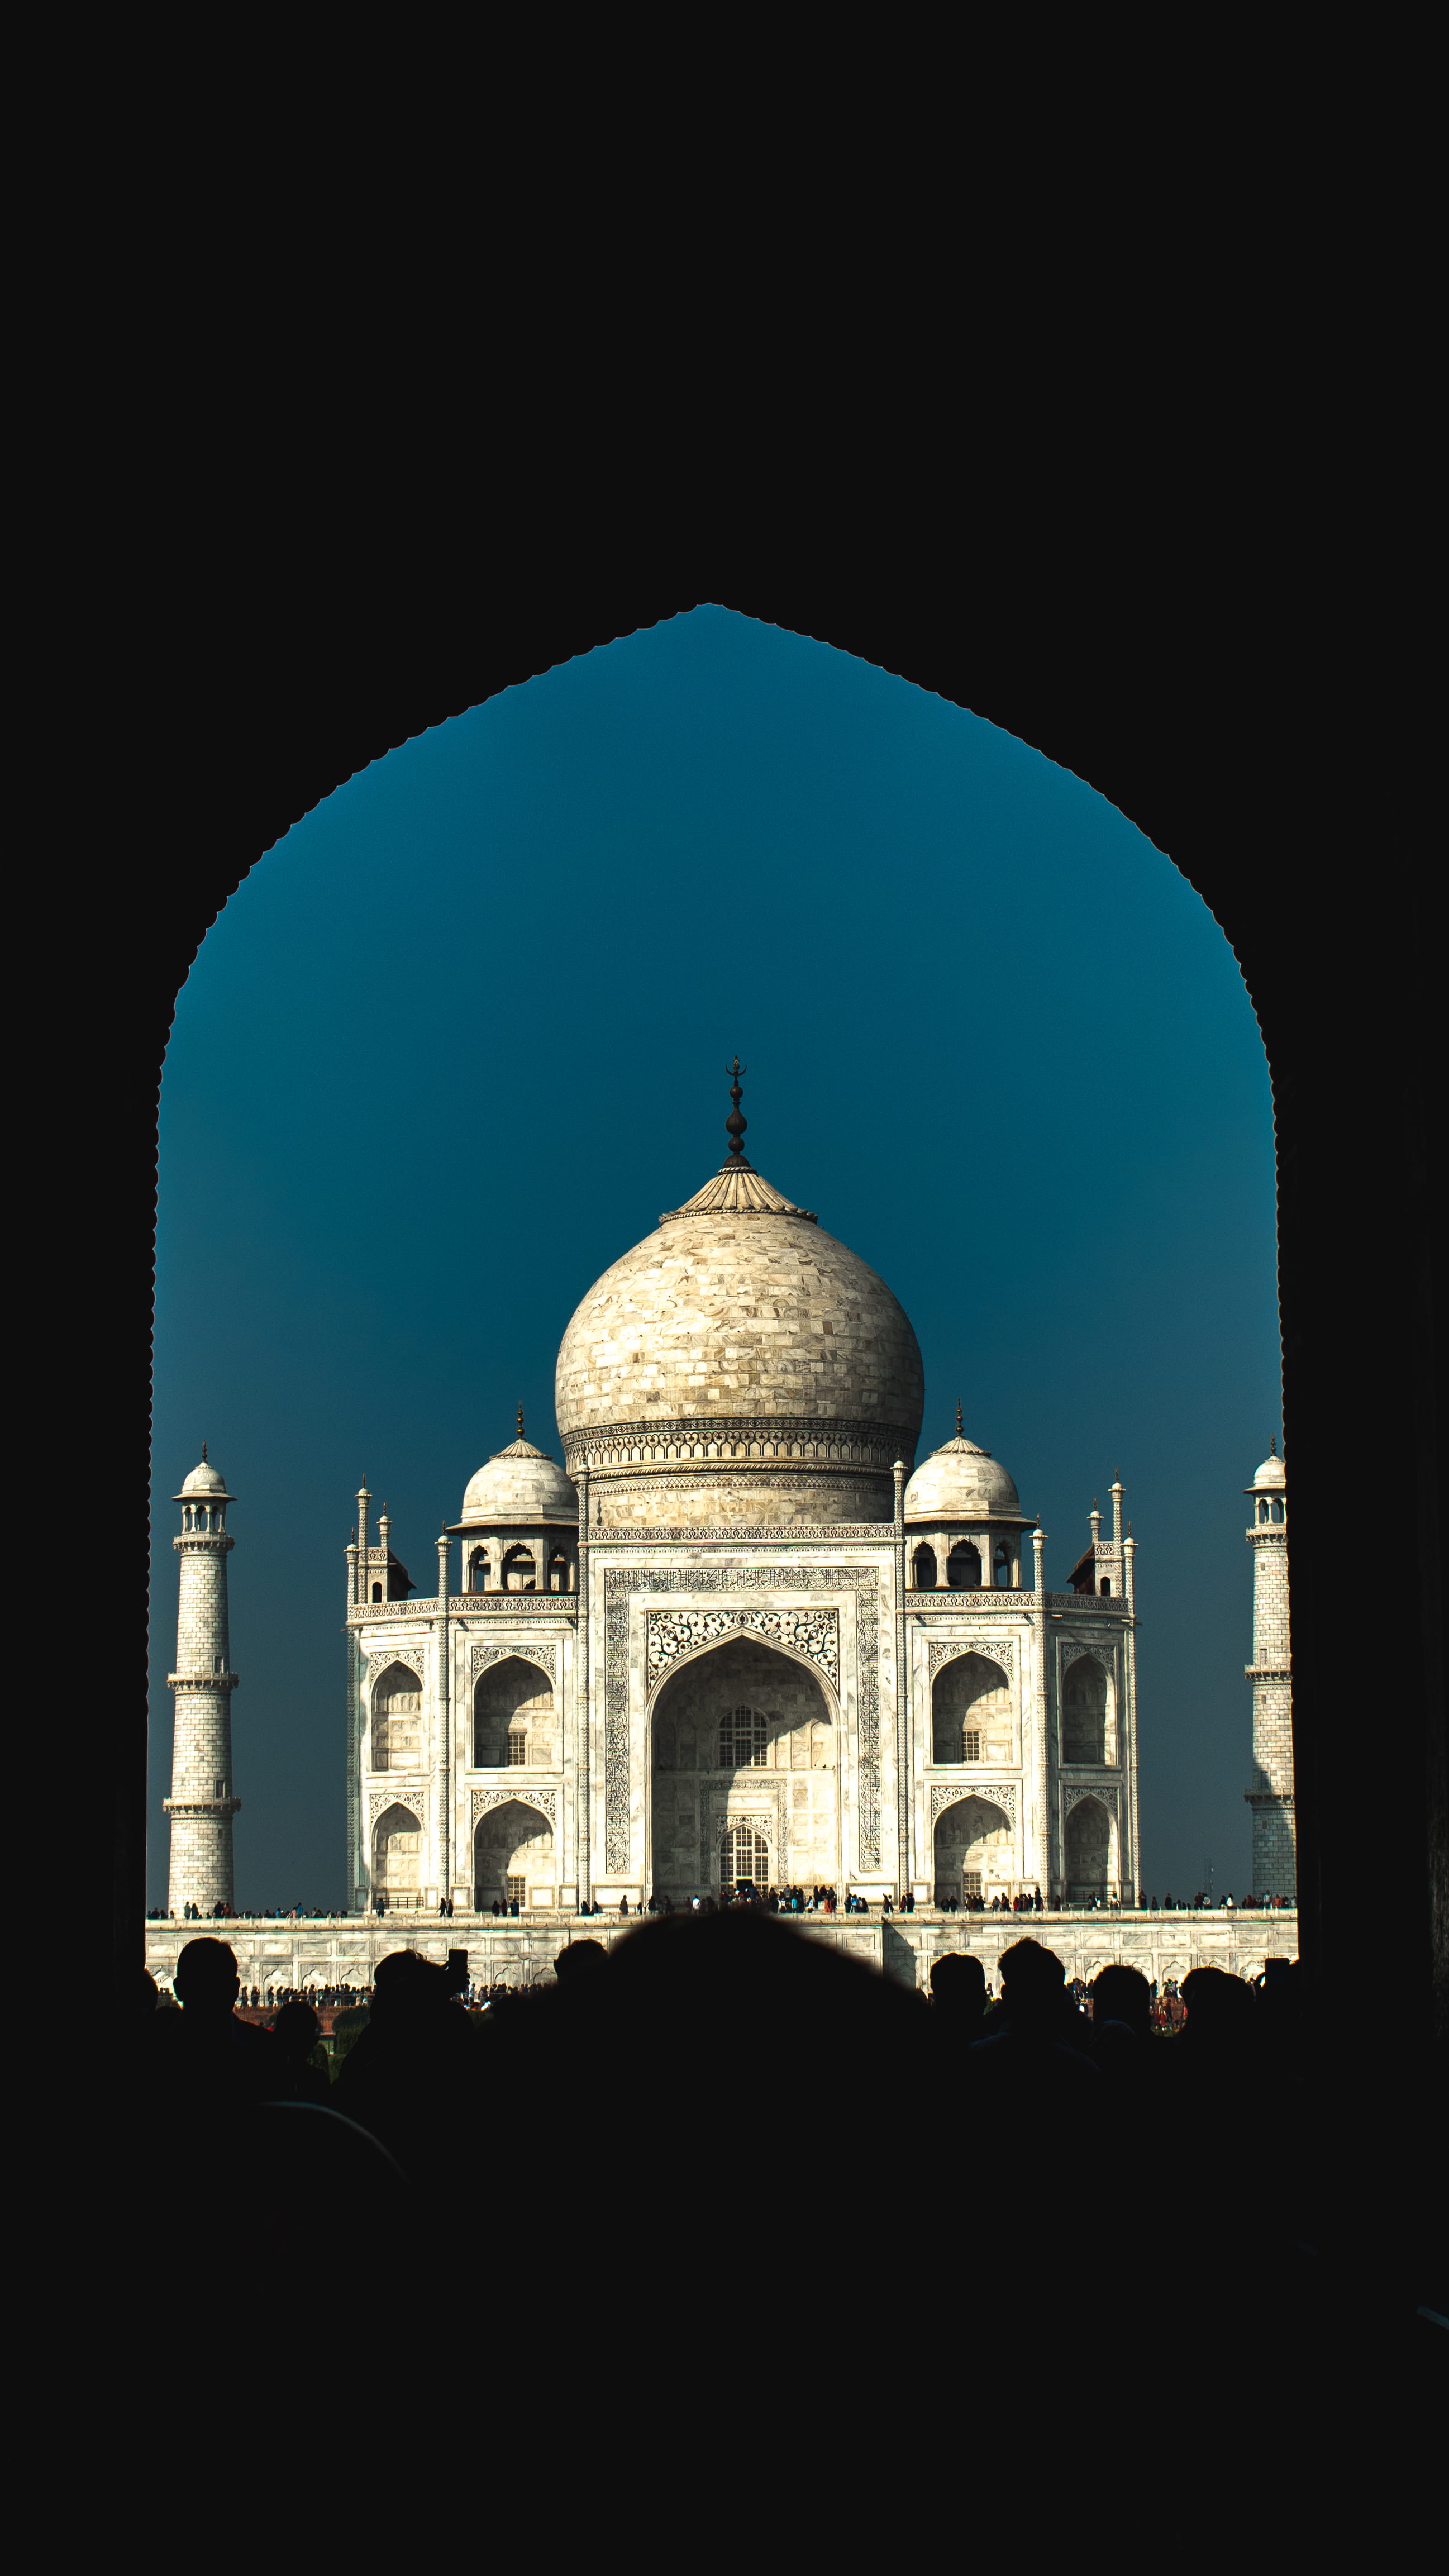 Taj Mahal, dome, architecture, building, person, human, mosque